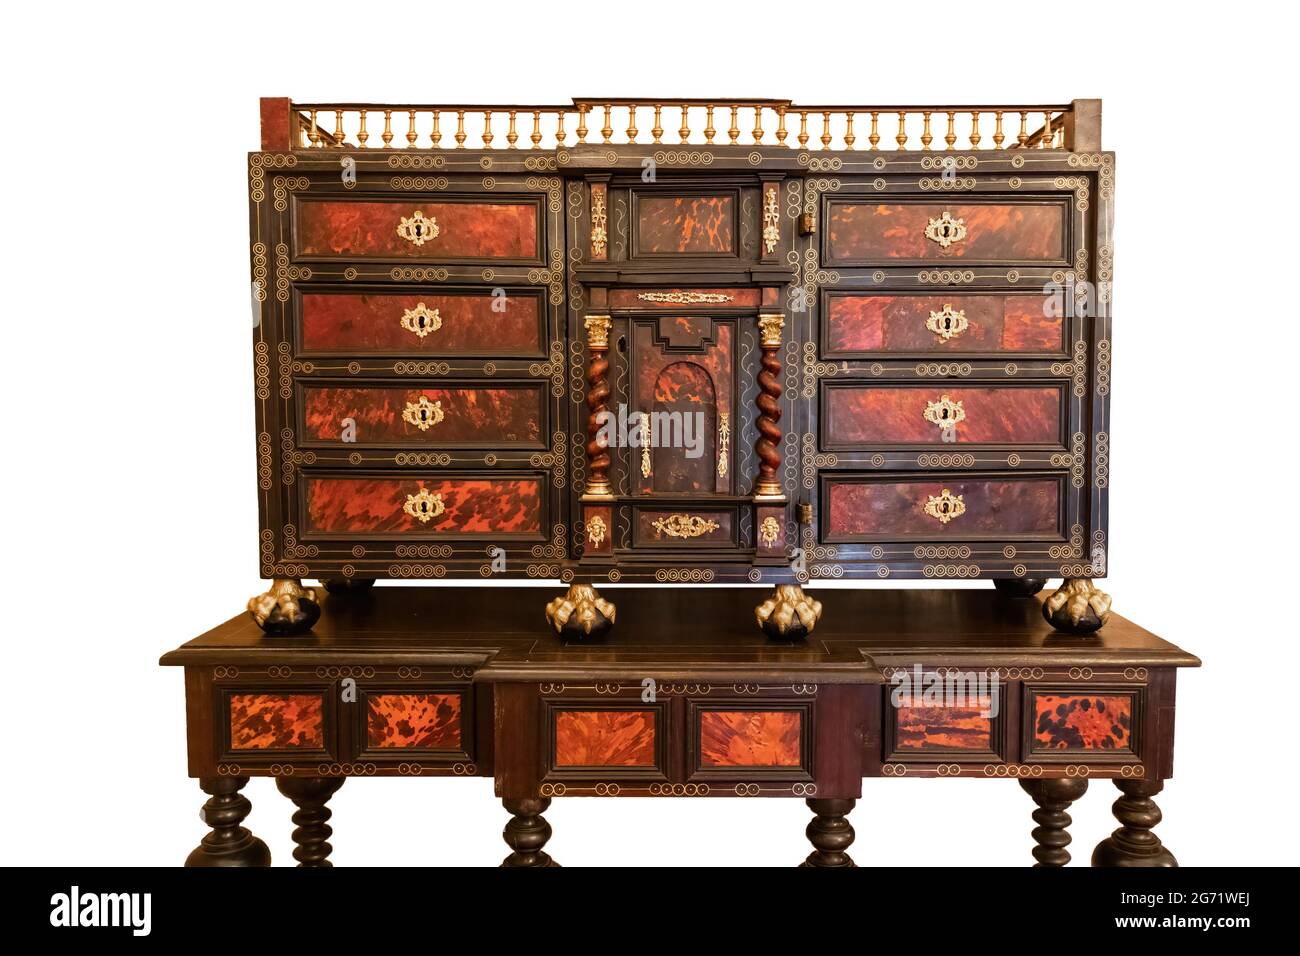 Möbel aus Holz mit dem Namen Bargueño spanischer Herkunft, hergestellt zwischen dem 16. Und 18. Jahrhundert, zum Schreiben oder Ablegen von Papieren, geeignet für die Herstellung von Stockfoto